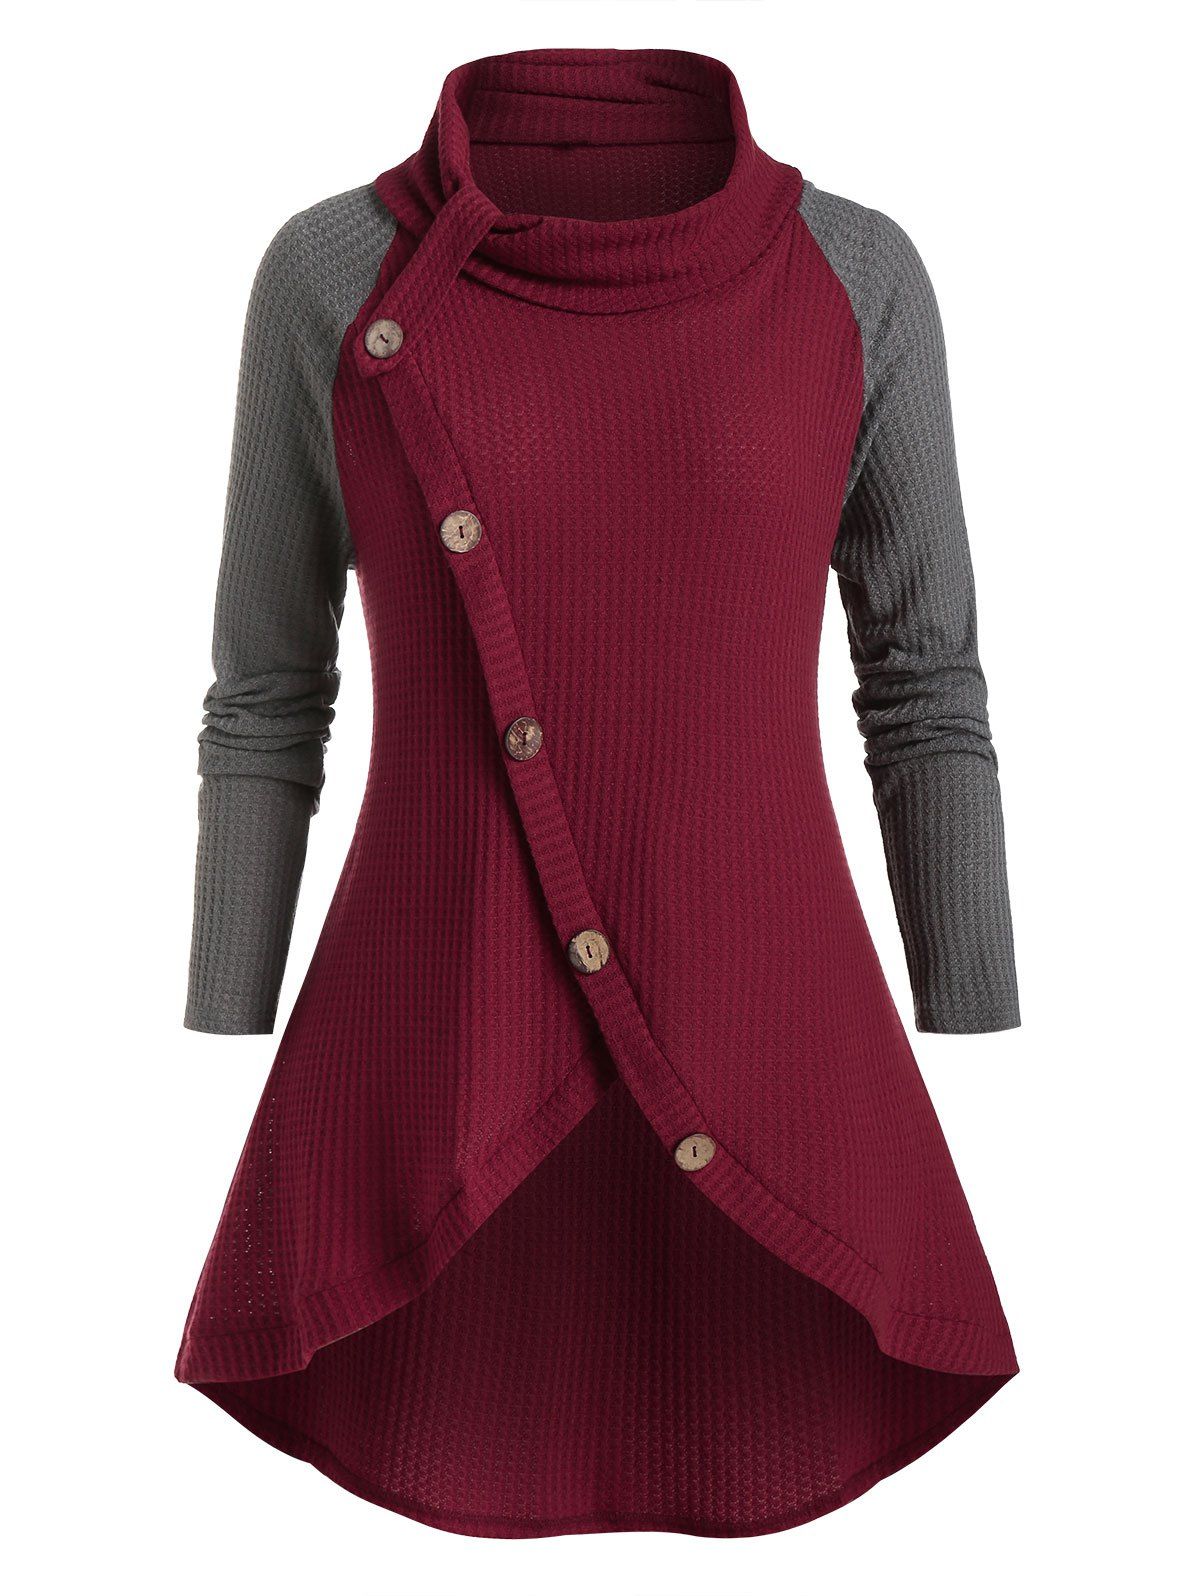 Plus Size Oblique Buttons Two-tone Sweater - multicolor 5X